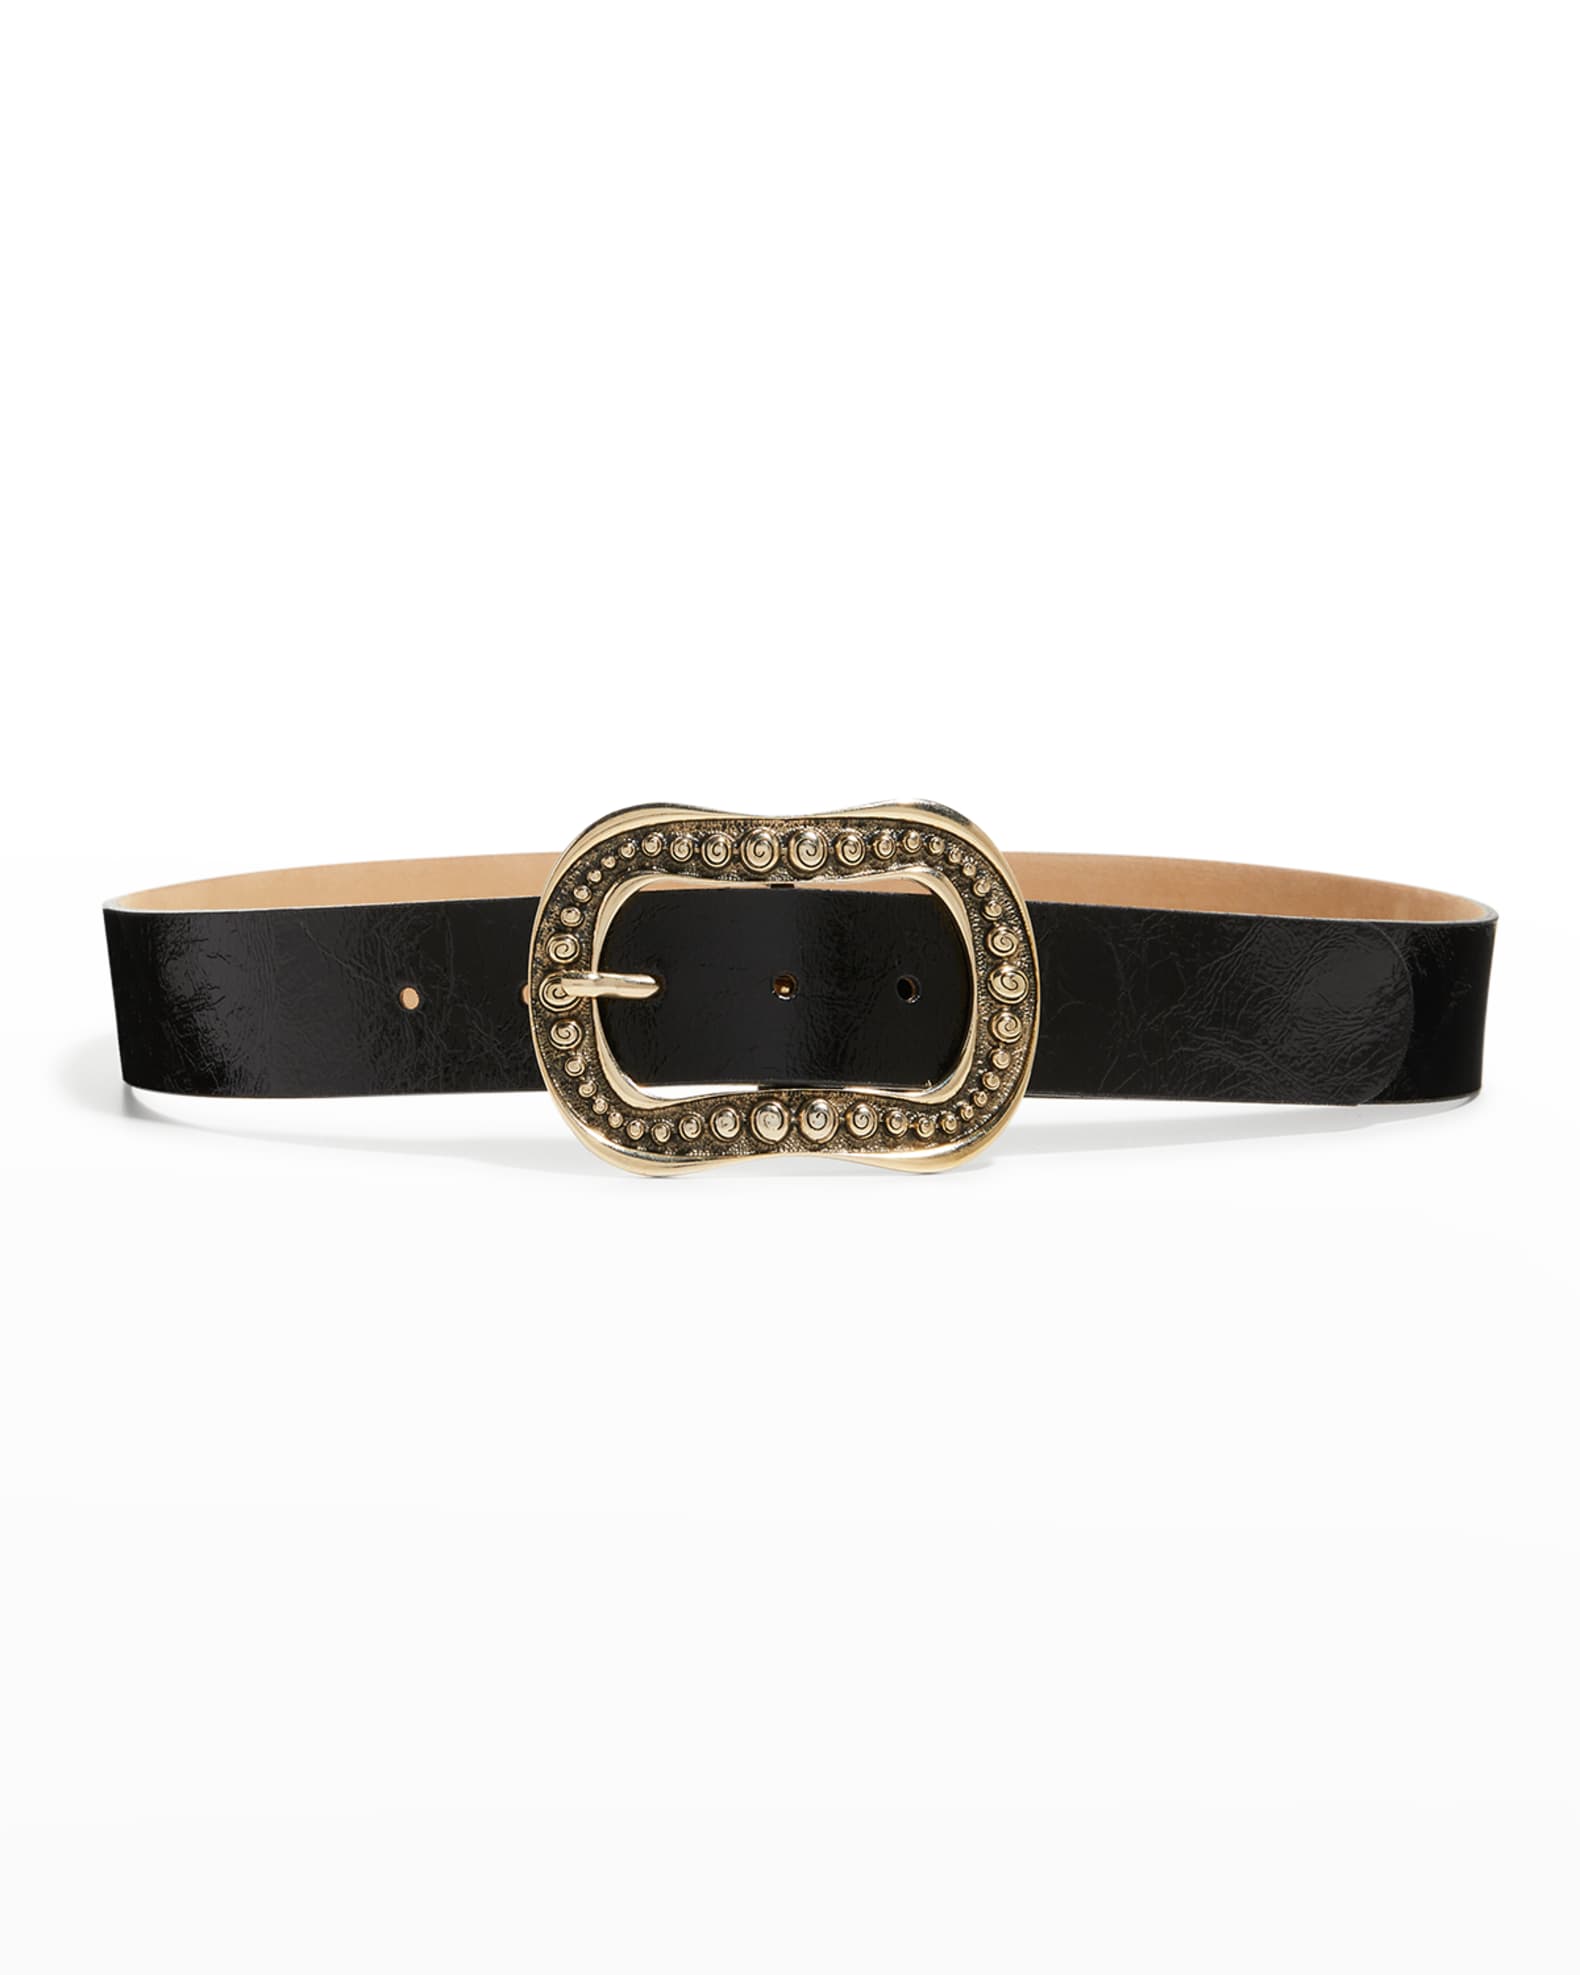 Women's Designer Belts at Neiman Marcus